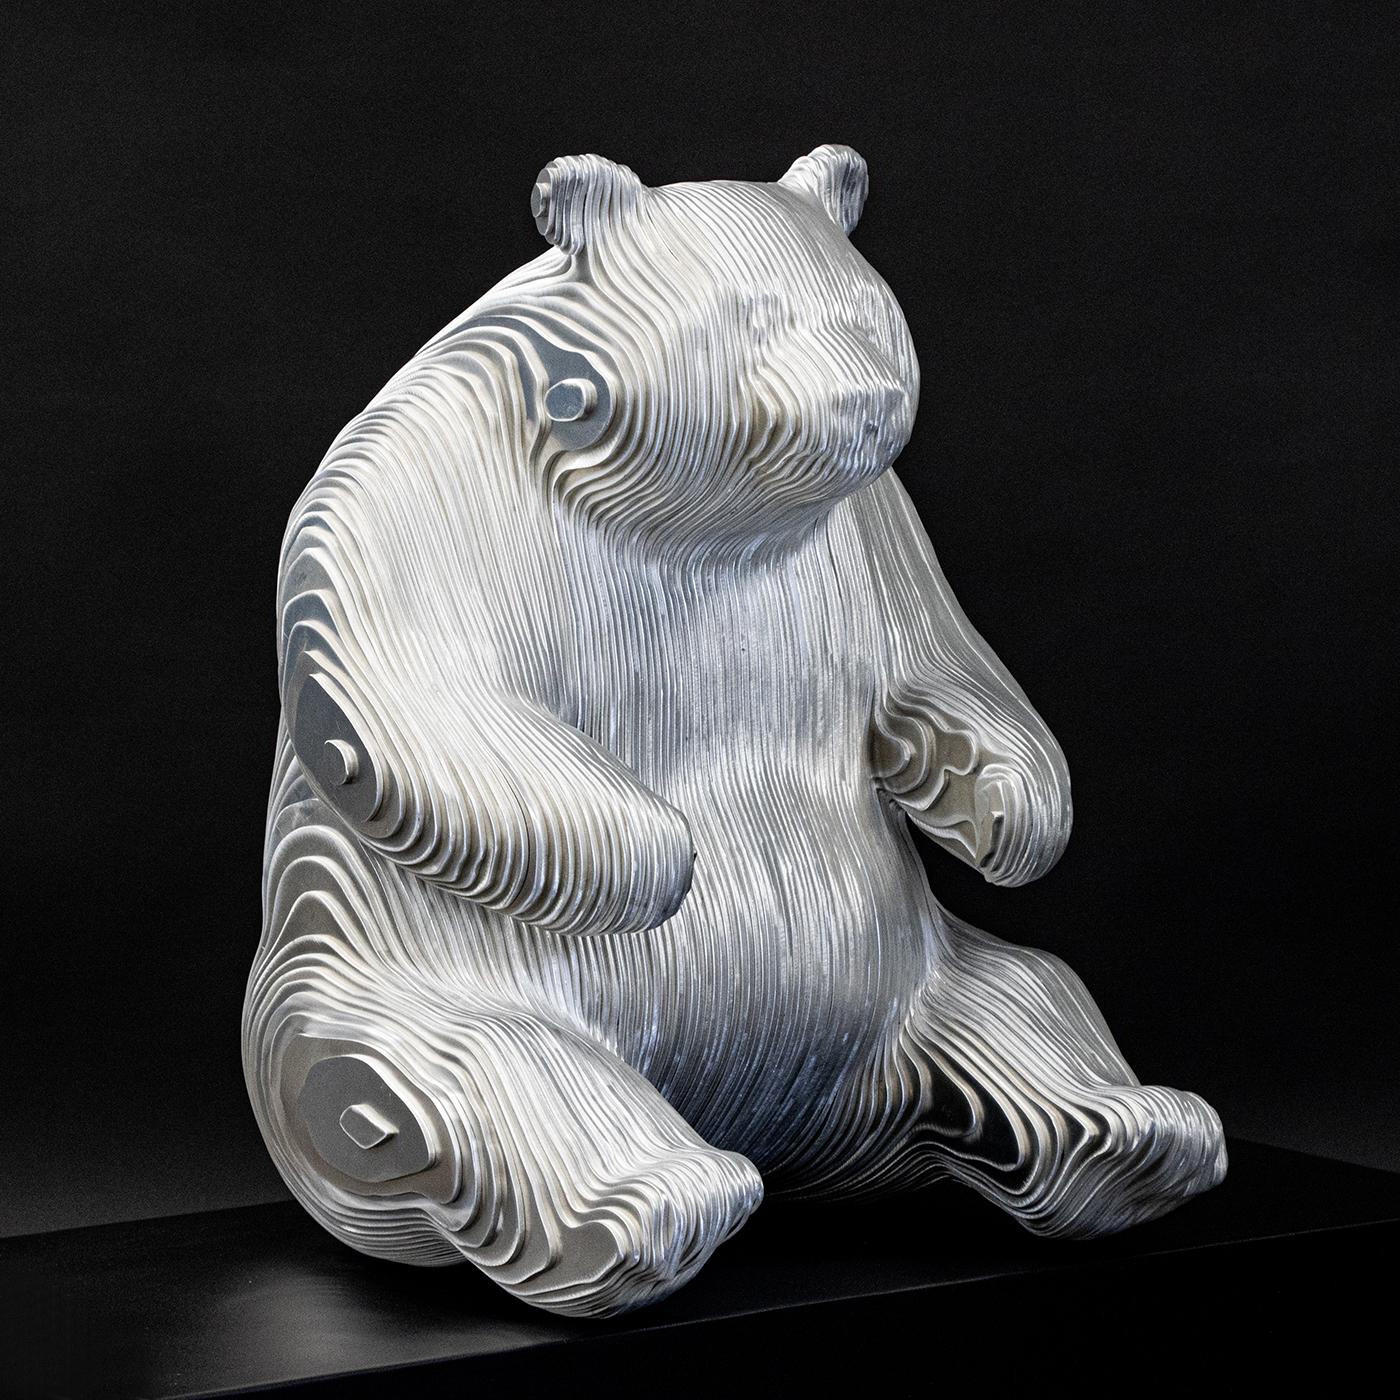 Sculpture Panda Polished en aluminium 
des assiettes fabriquées à la main. Edition limitée de 8 pièces 
en aluminium soudé et façonné pour en faire de magistrales 
des œuvres d'art contemporain.